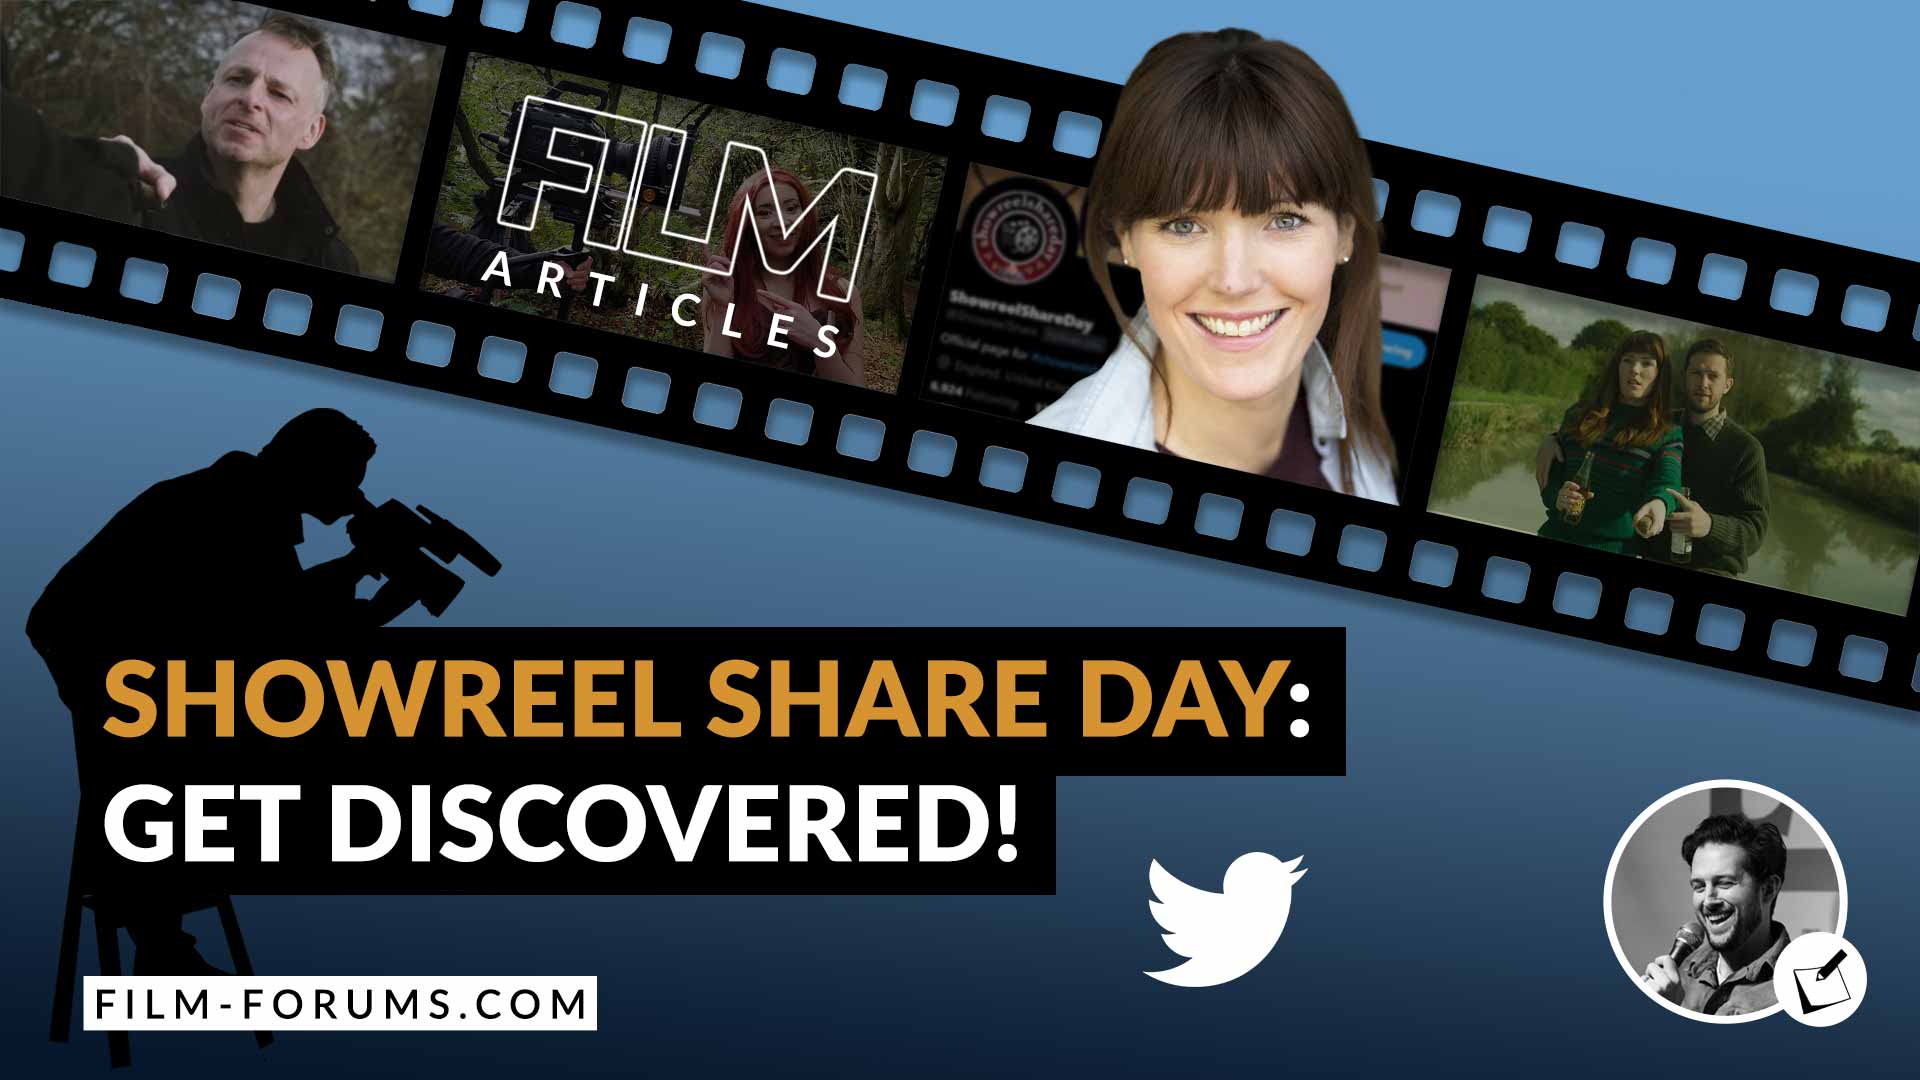 Showreel Share Day Kate Davies-Speak, Twitter